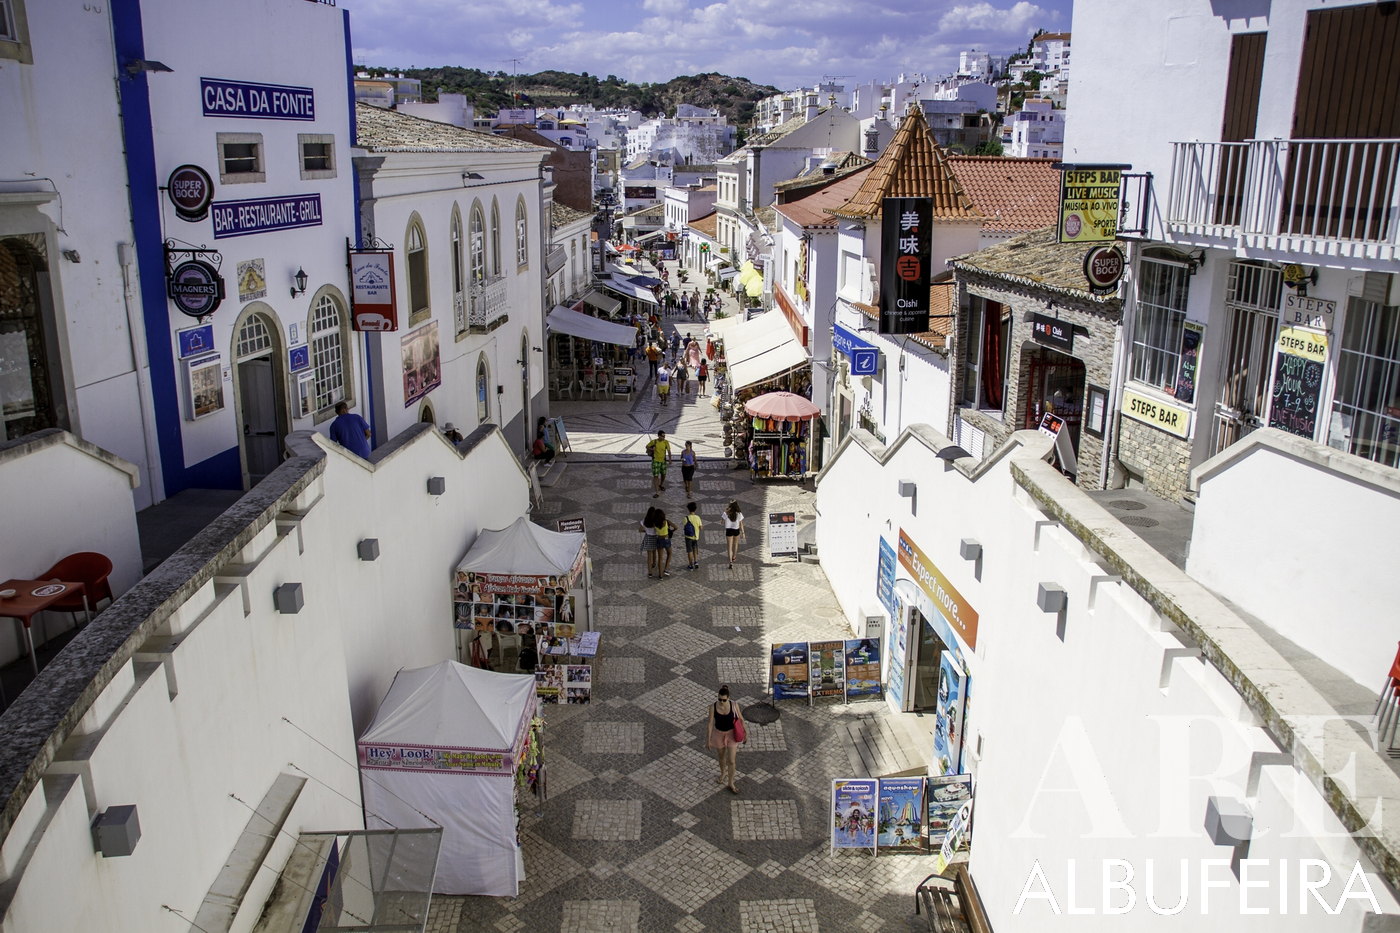 Calle del centro de la ciudad de Albufeira, pavimentada con la tradicional 'pedra de calçada', bulliciosa con una variedad de tiendas que ofrecen souvenirs, animados bares, diversos restaurantes y una gran variedad de licores.